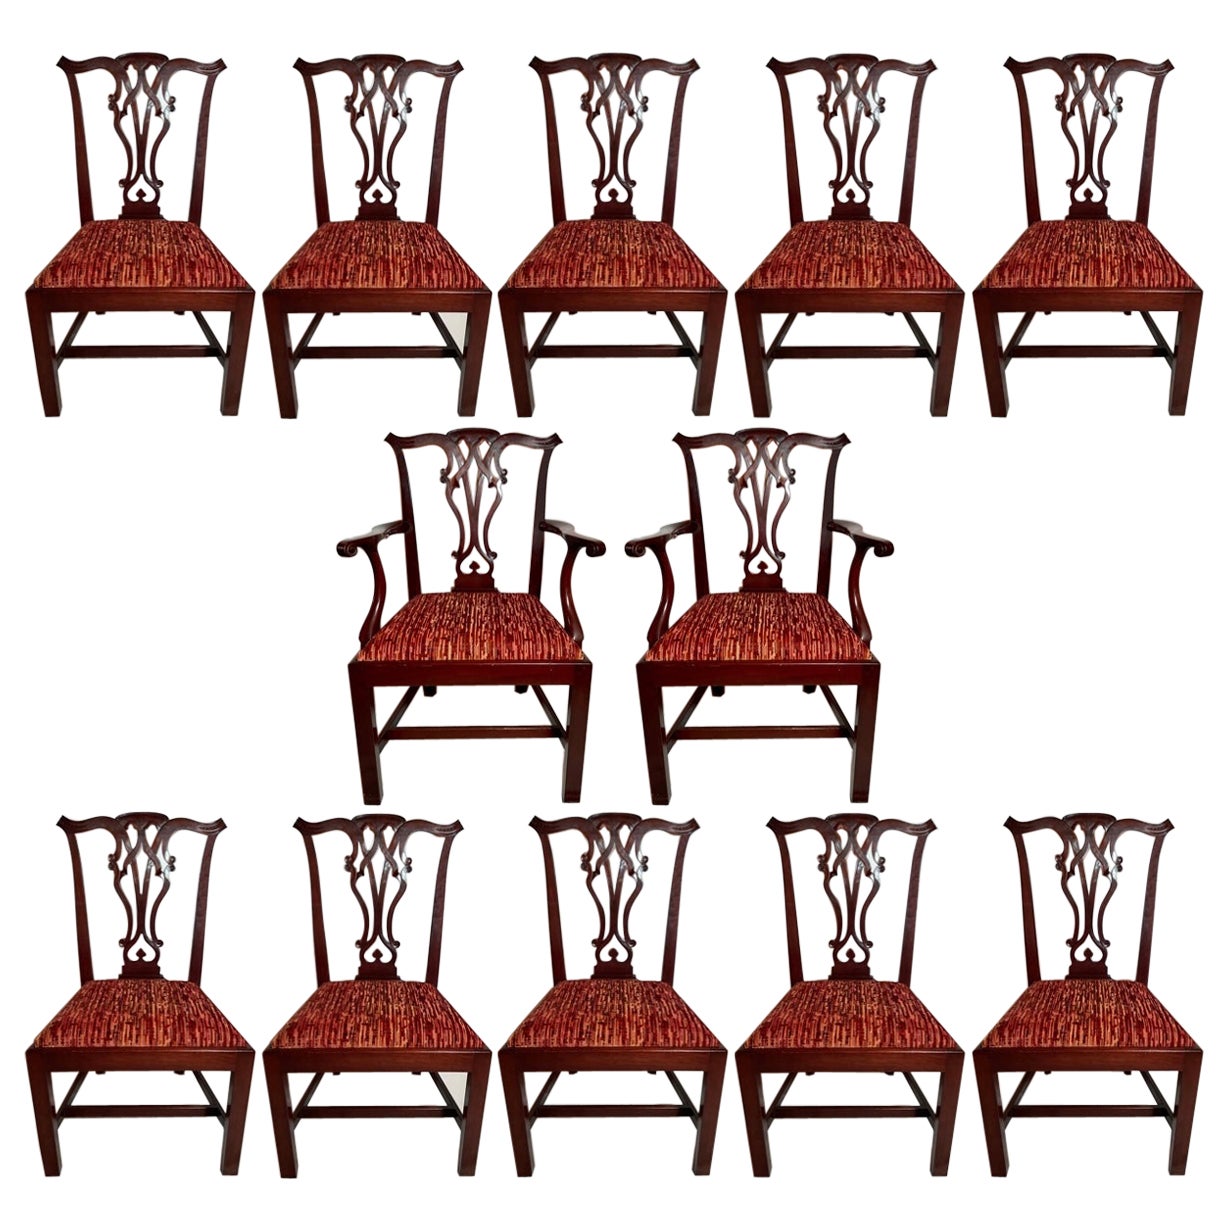 Ensemble de 12 chaises Chippendale anglaises anciennes en acajou, vers 1900.